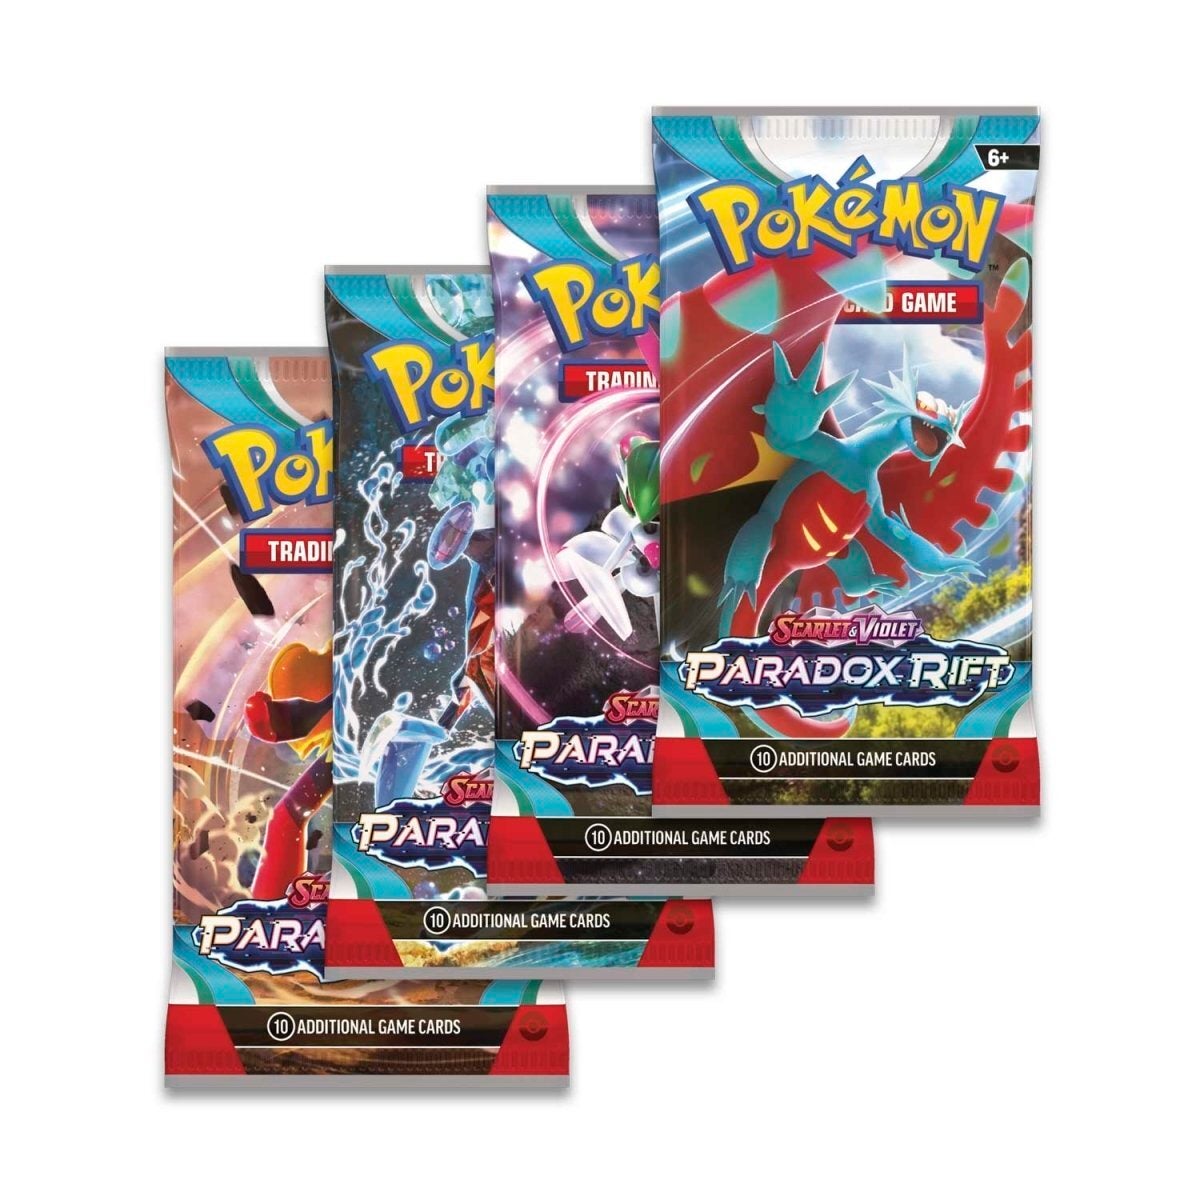 Pokémon TCG: Scarlet & Violet-Paradox Rift Pokémon Center Exclusive El –  Product Sage Collectibles